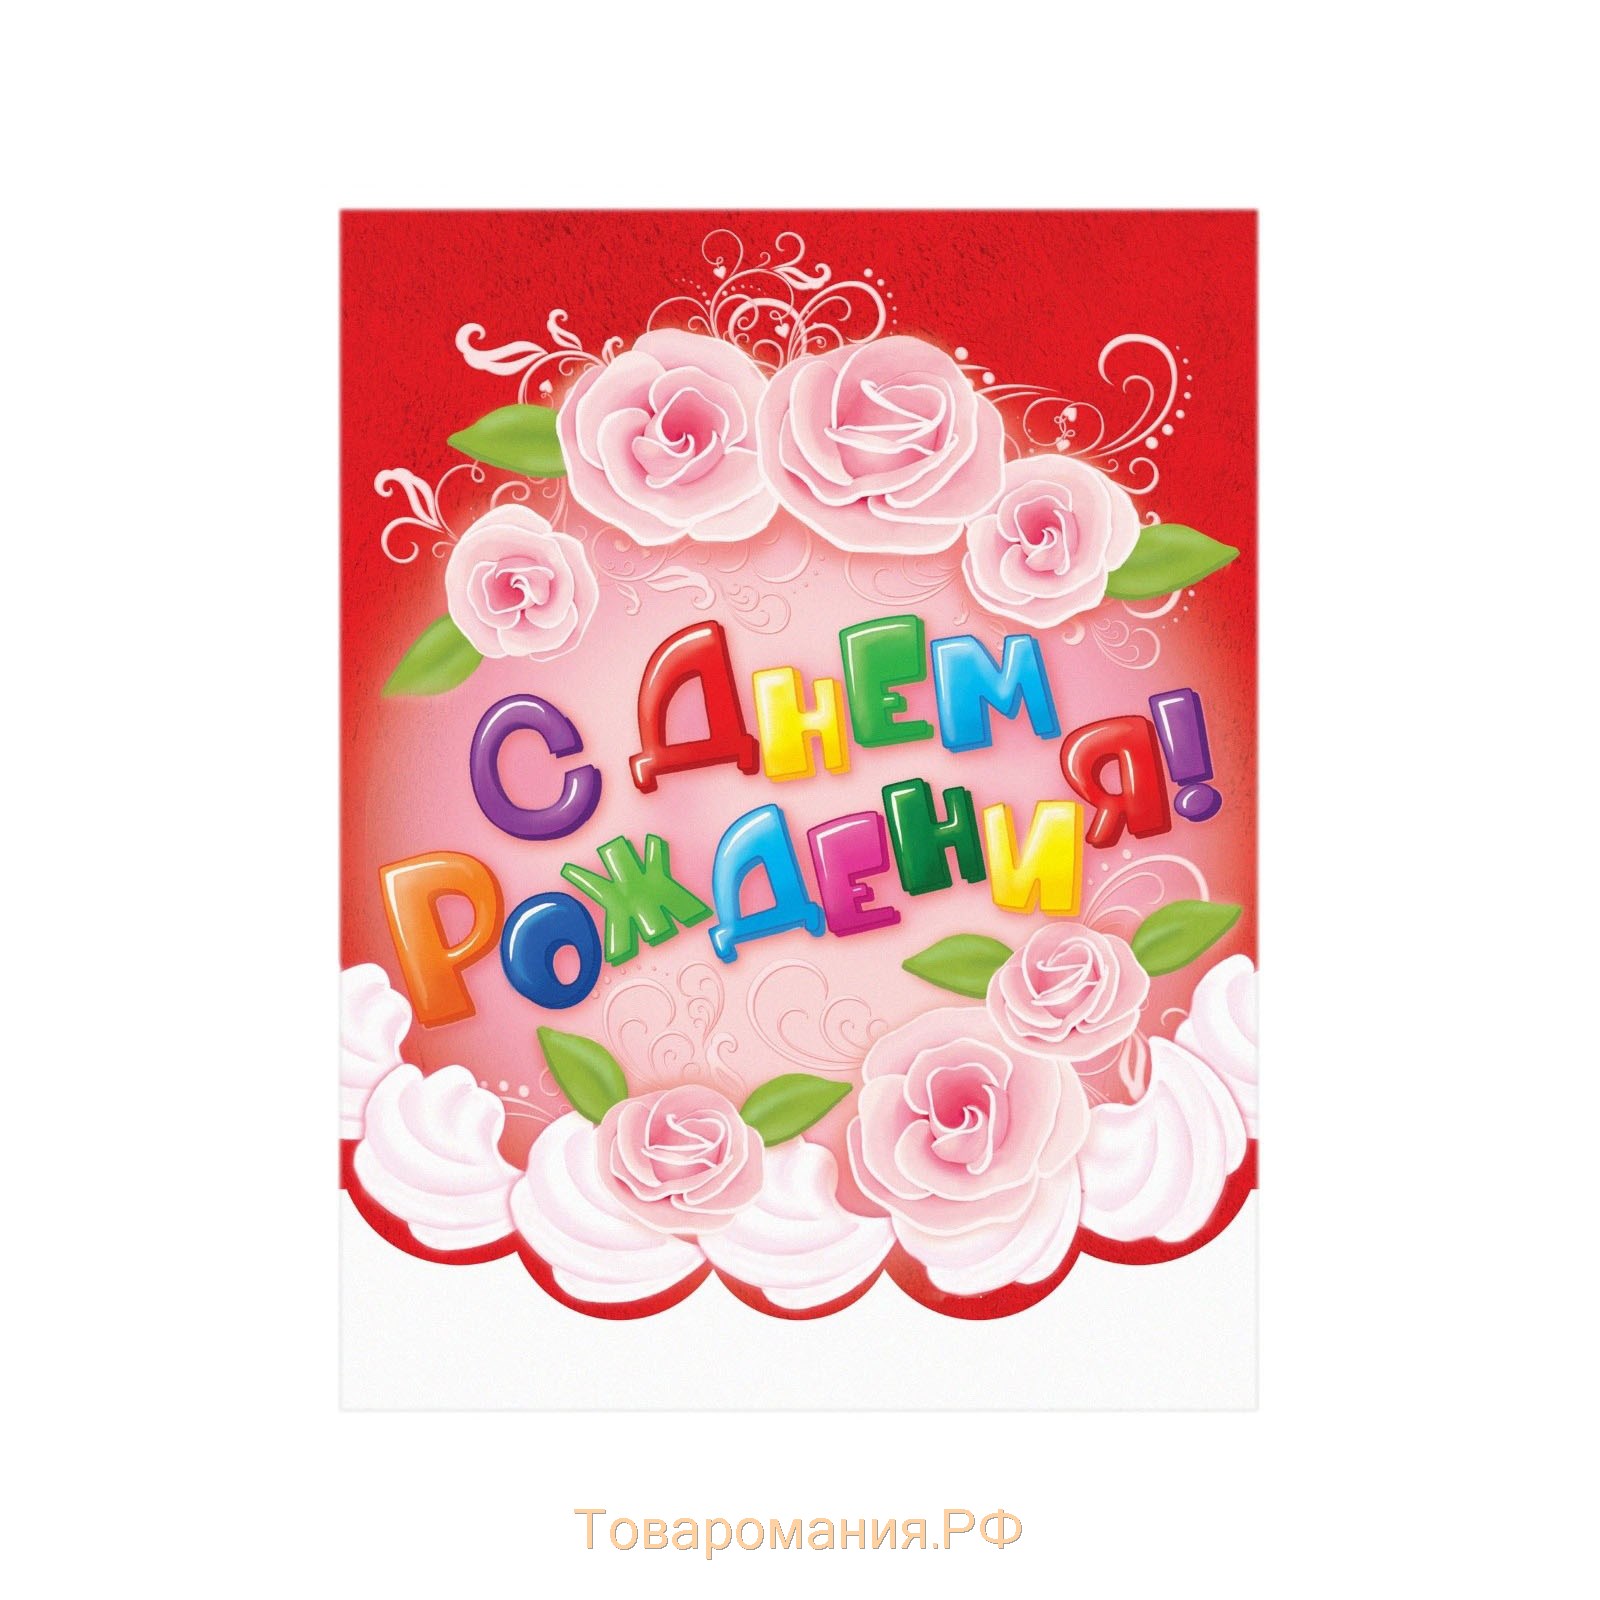 Скатерть одноразовая «С днём рождения!», цветы, 130х180 см